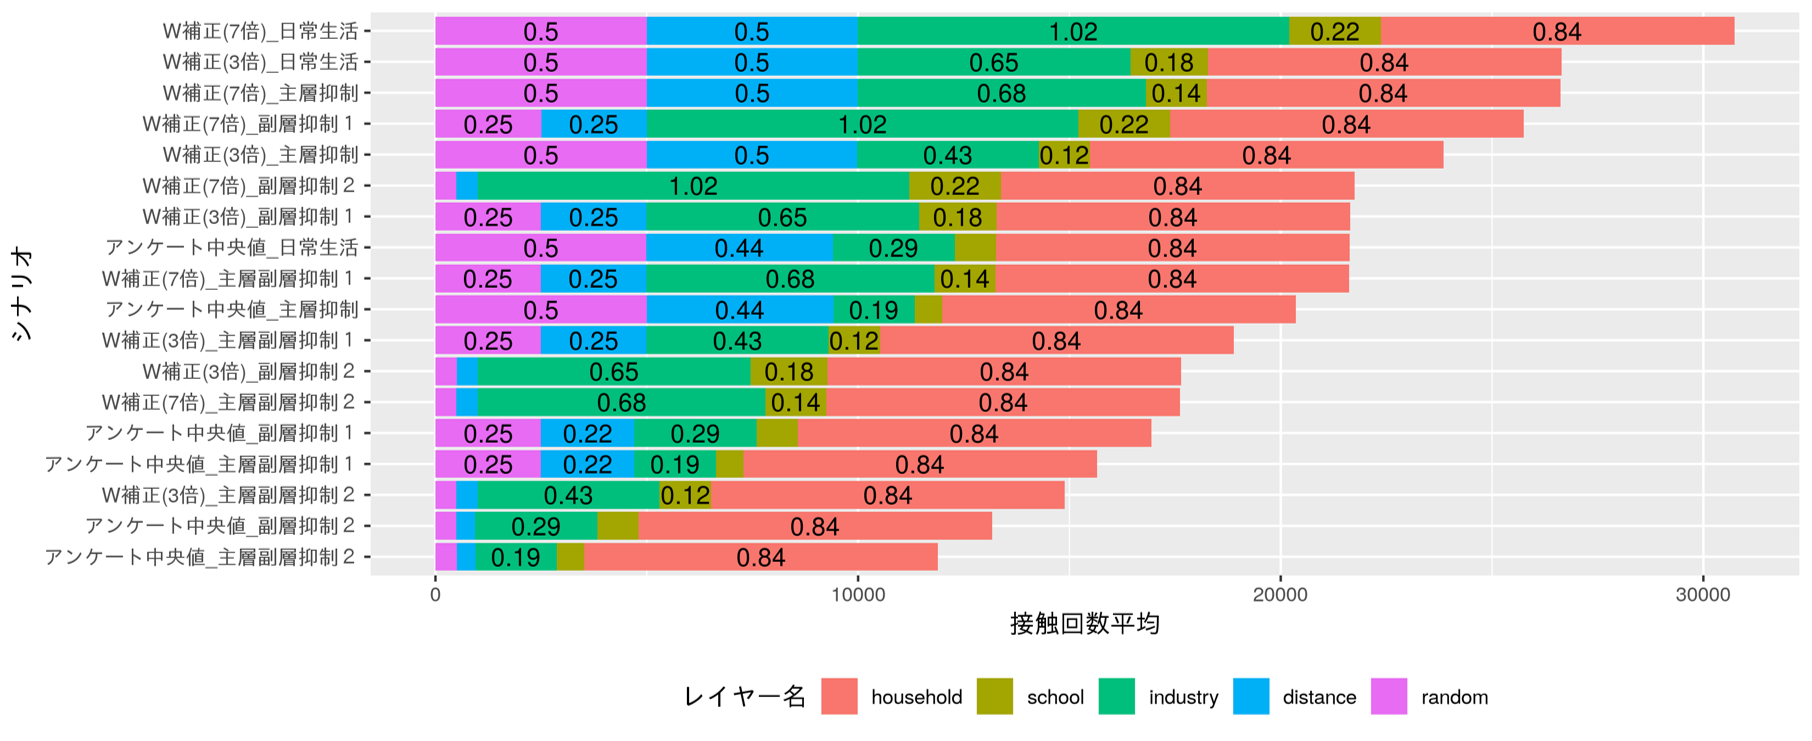 東京 池袋 (時間軸による地域内の人数)